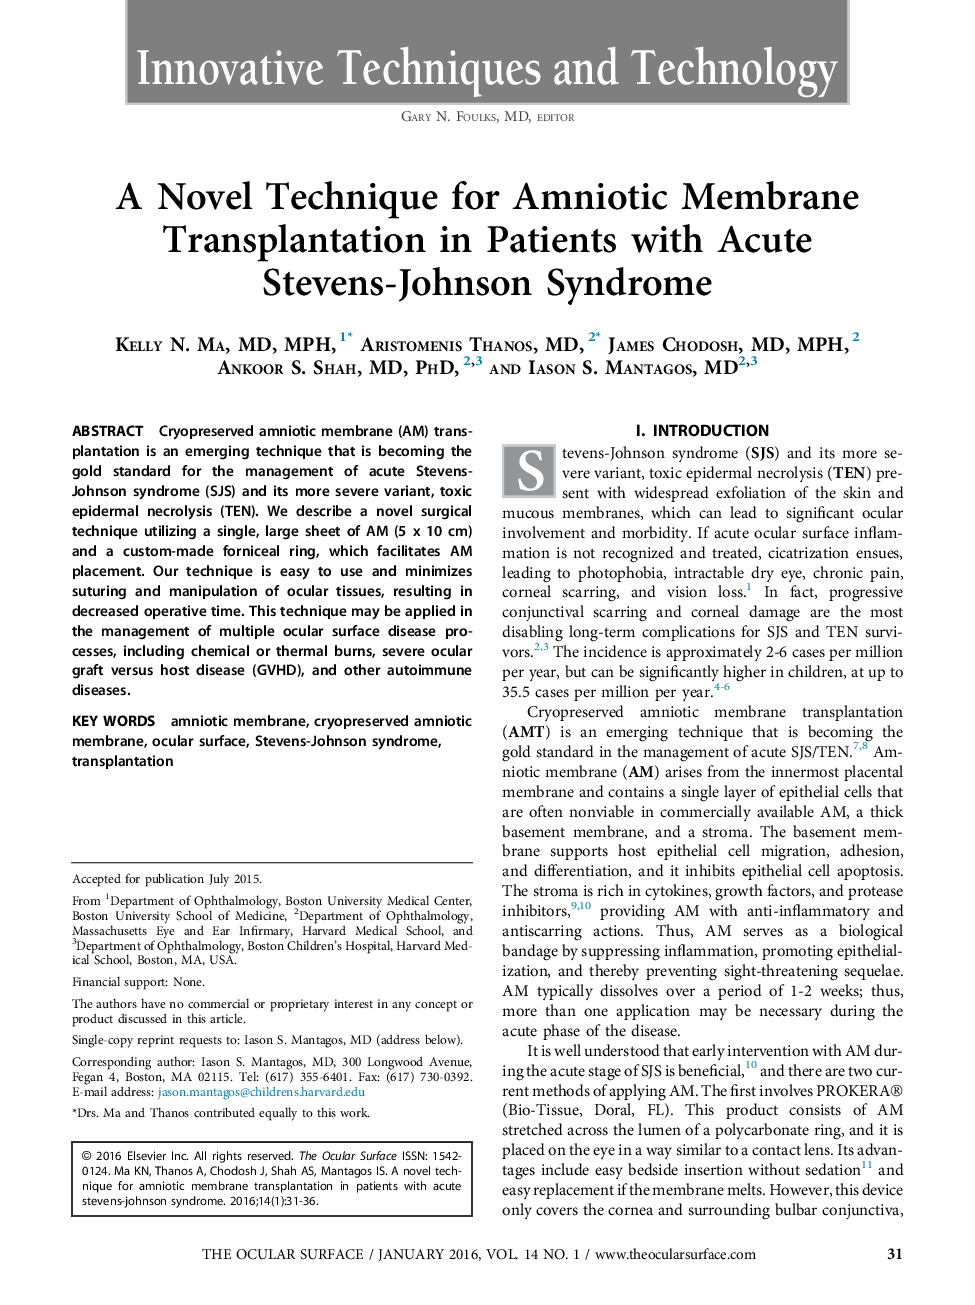 یک تکنیک جدید برای پیوند غشاء آمنیوتیک در افراد مبتلا به سندرم حاد استیونس جانسون